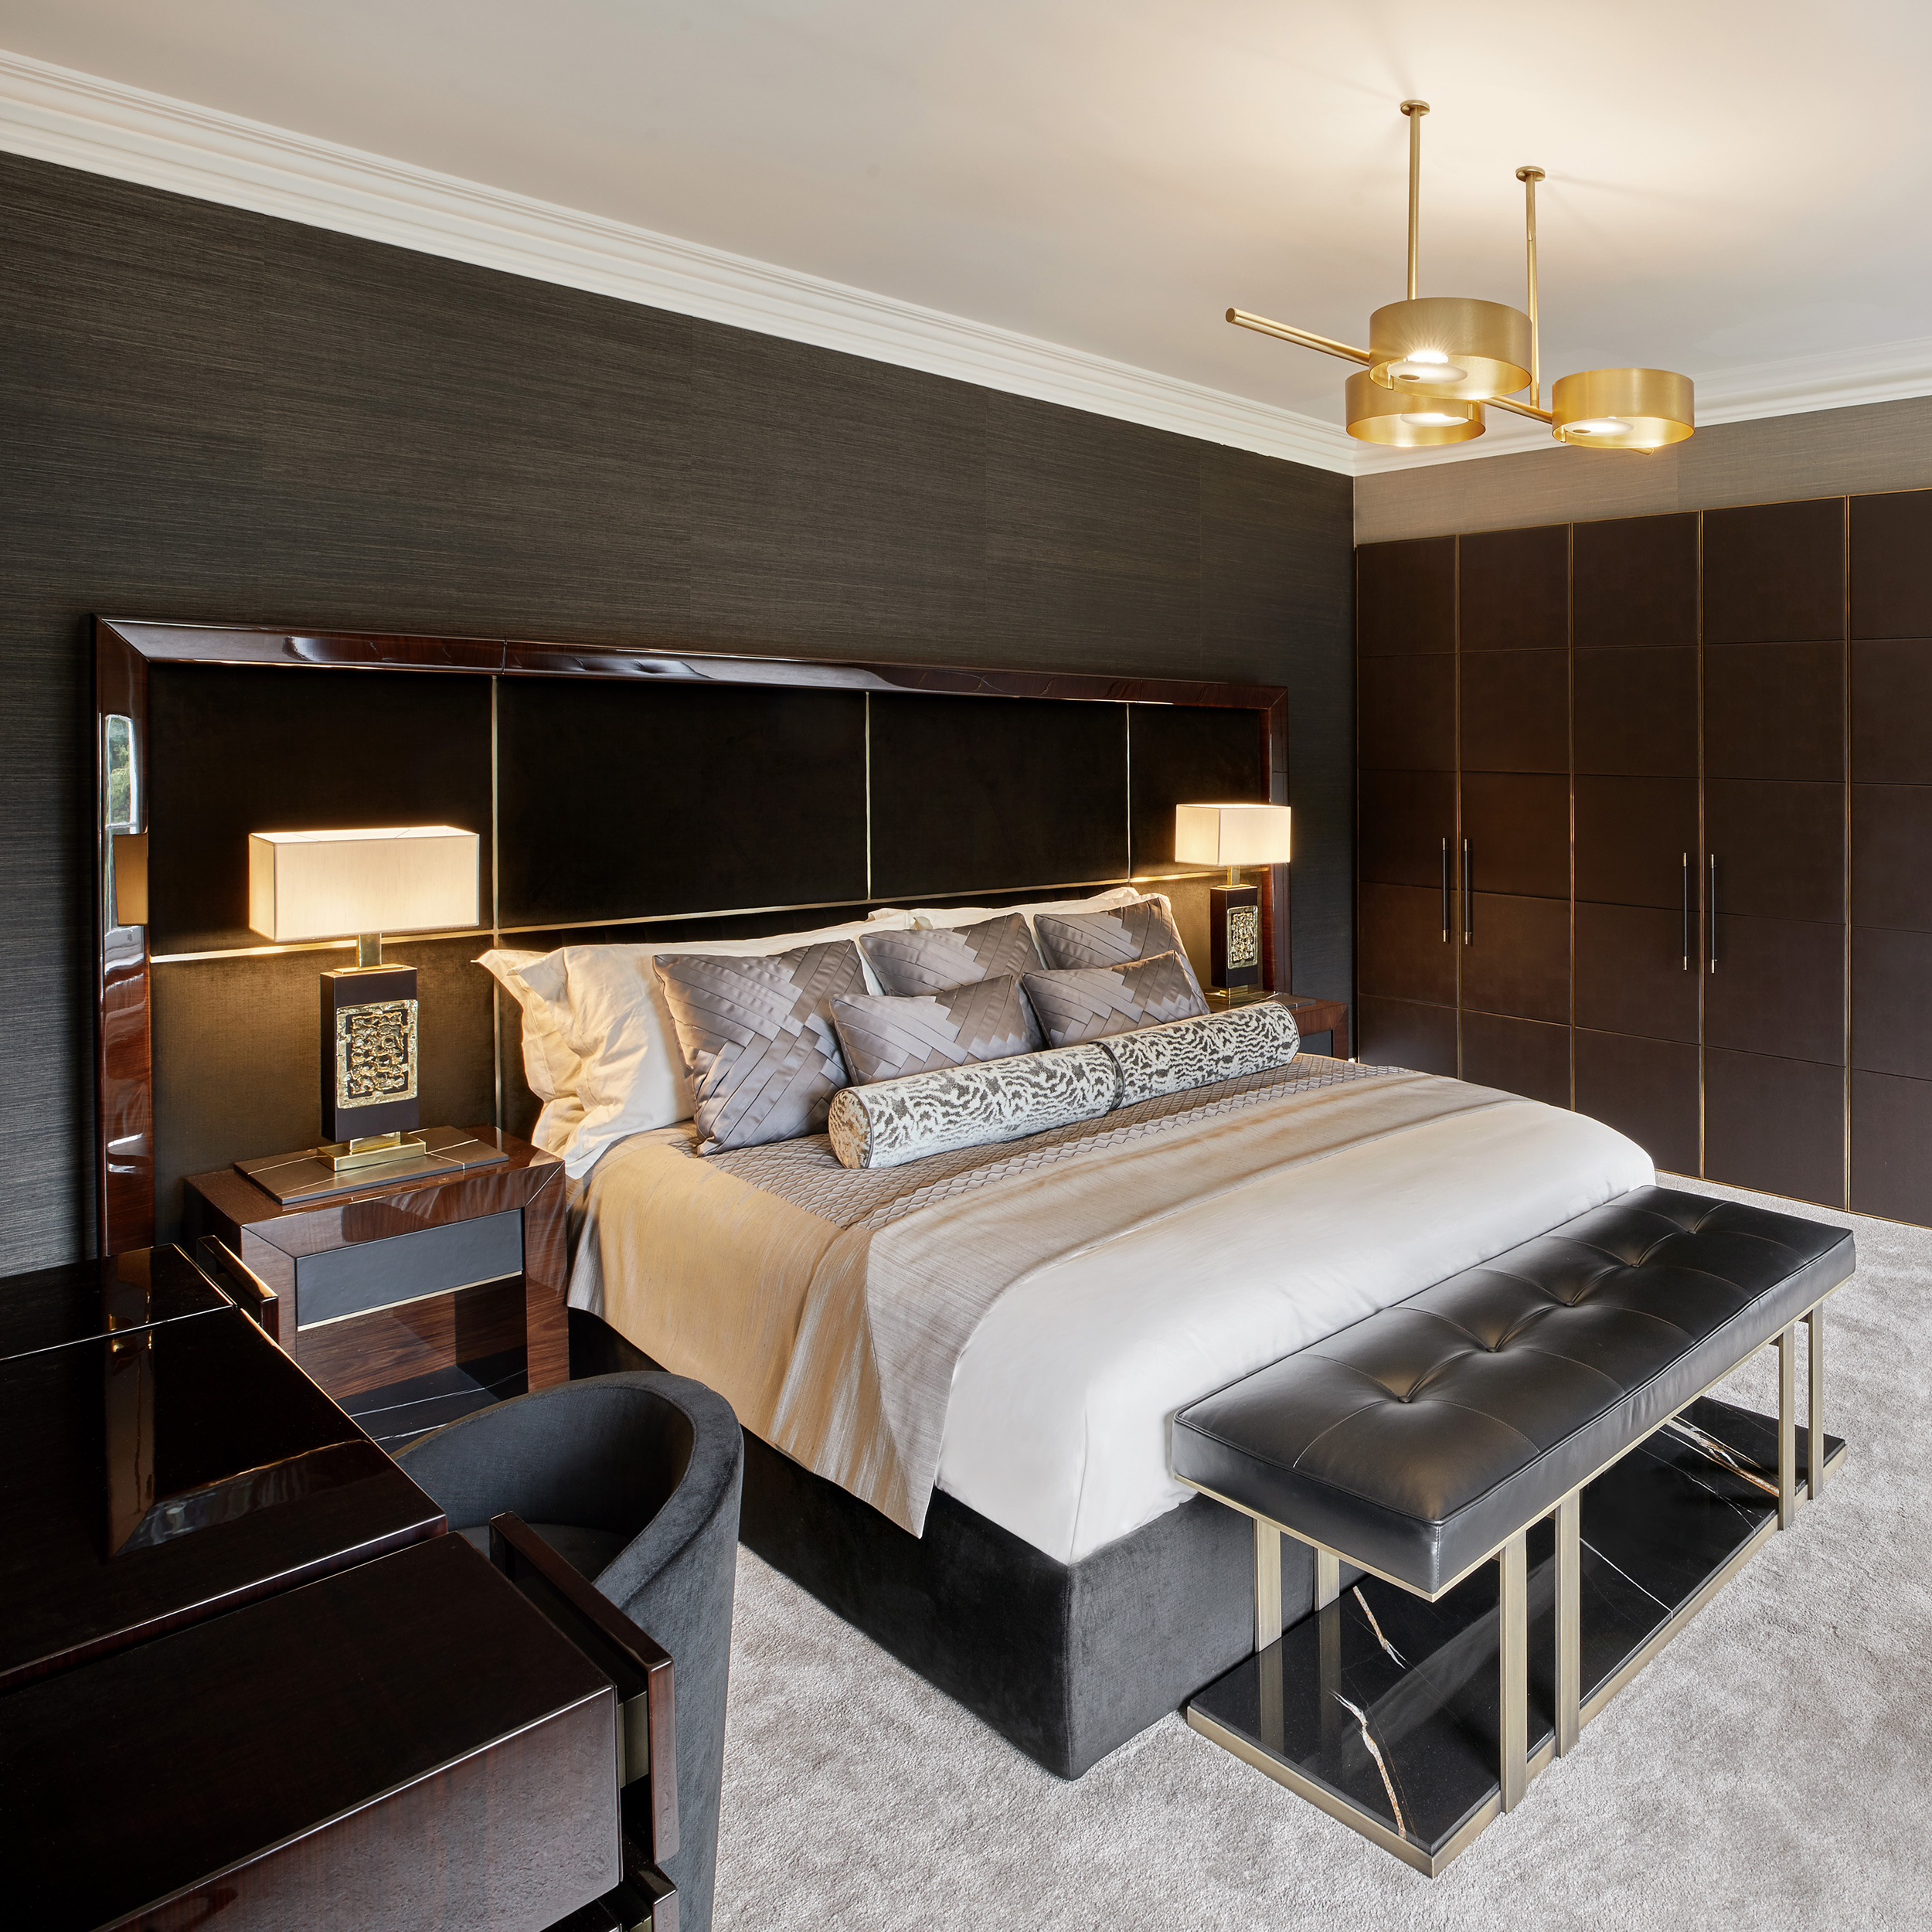 Luxury Rosewood Veneered Bed With Large Headboard